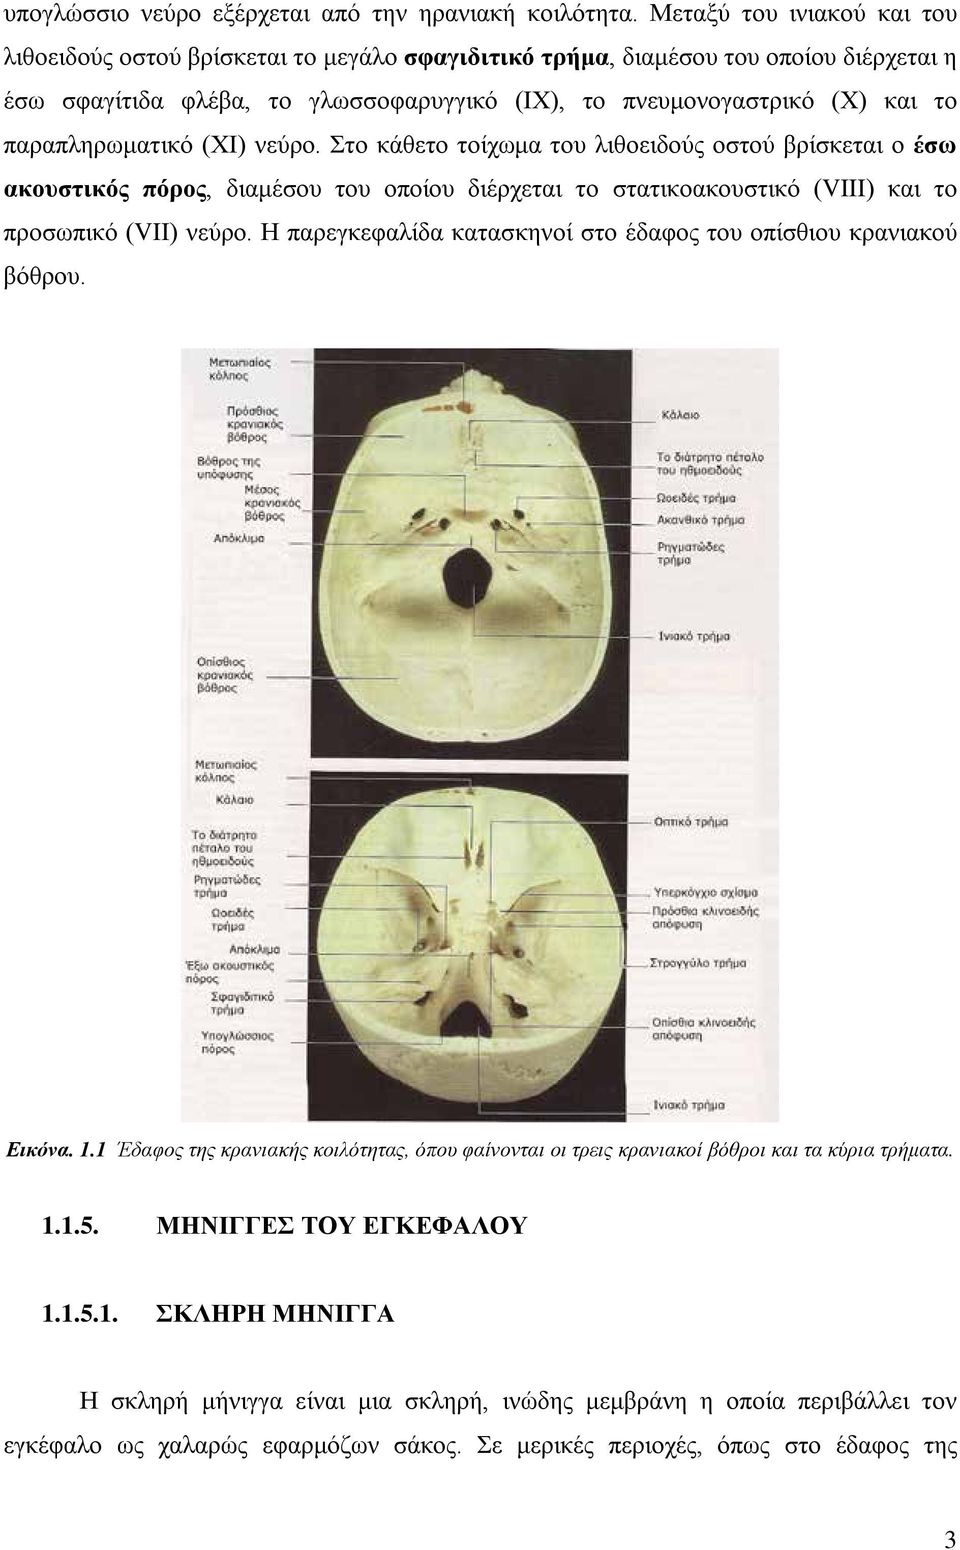 παραπληρωματικό (ΧΙ) νεύρο. Στο κάθετο τοίχωμα του λιθοειδούς οστού βρίσκεται ο έσω ακουστικός πόρος, διαμέσου του οποίου διέρχεται το στατικοακουστικό (VIII) και το προσωπικό (VII) νεύρο.